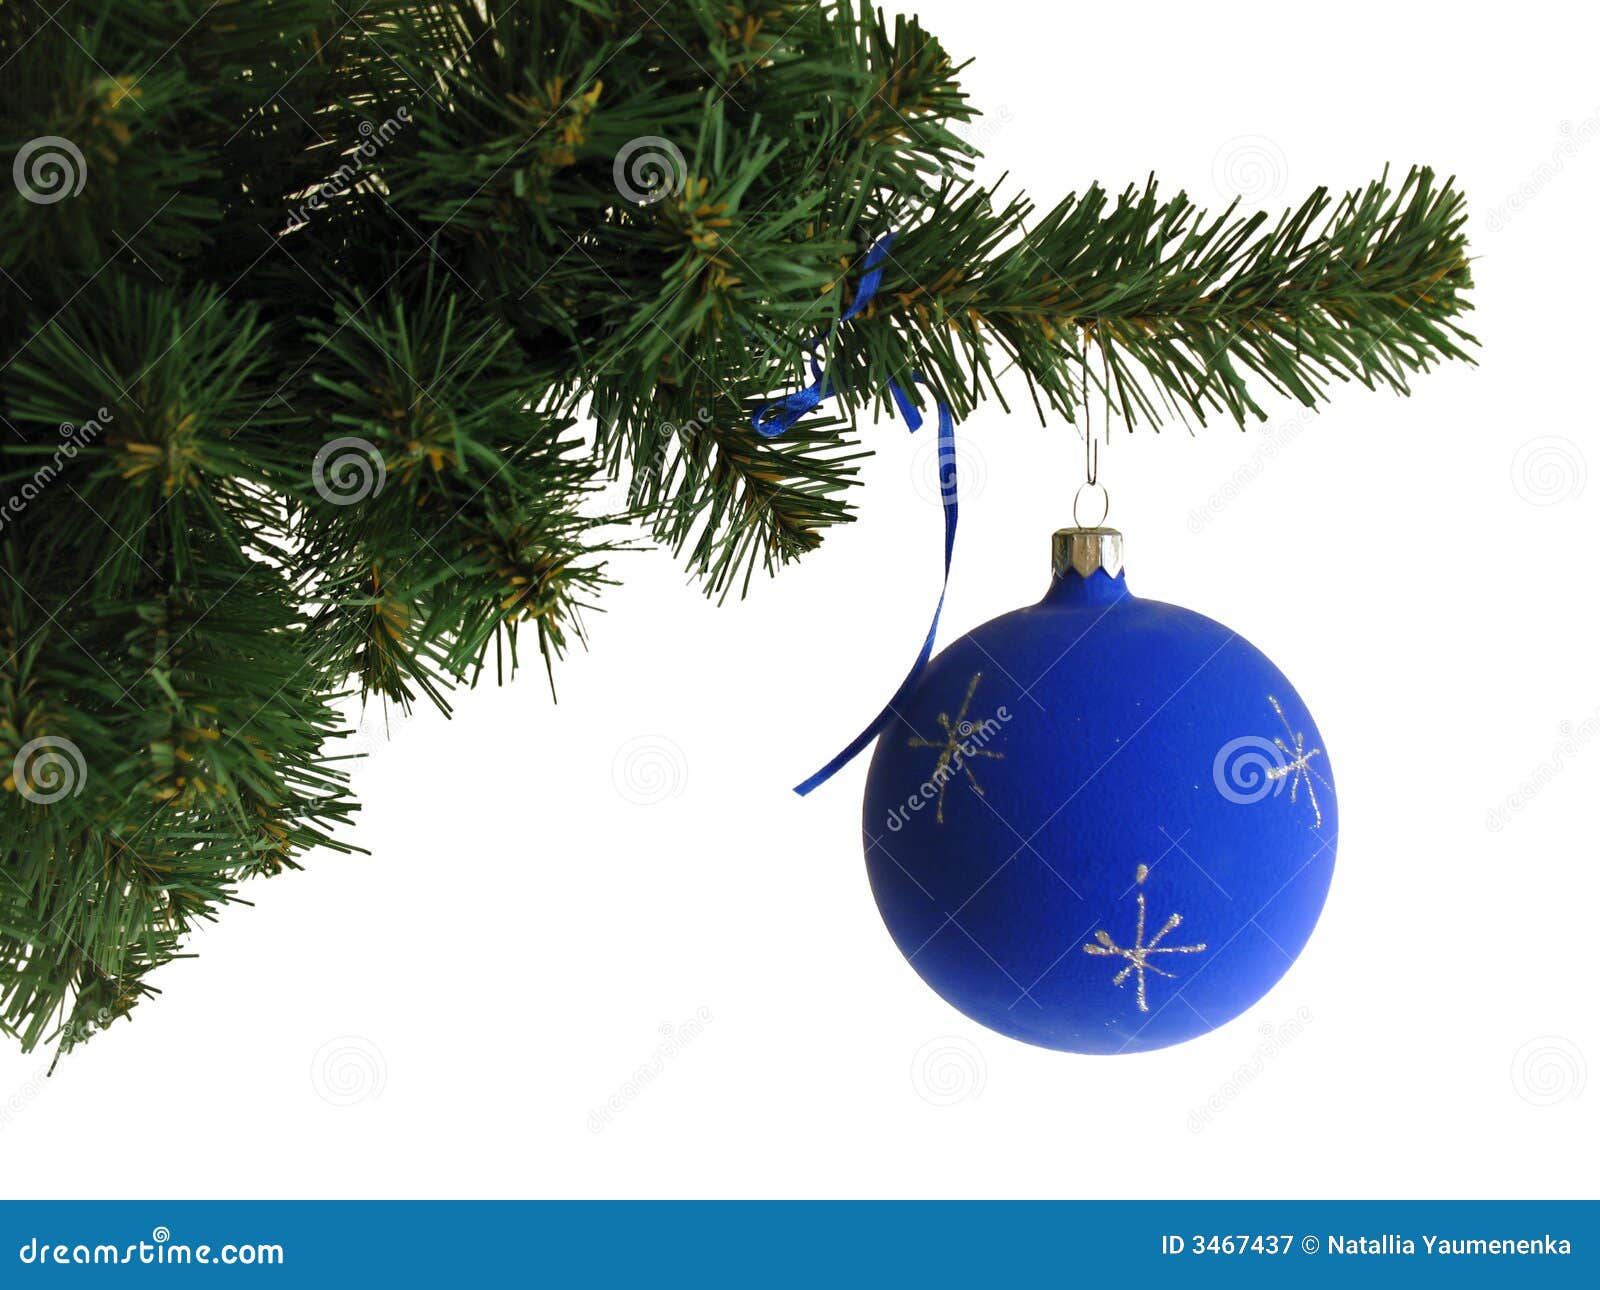 Blue ball stock image. Image of backgrounds, needle, decor - 3467437